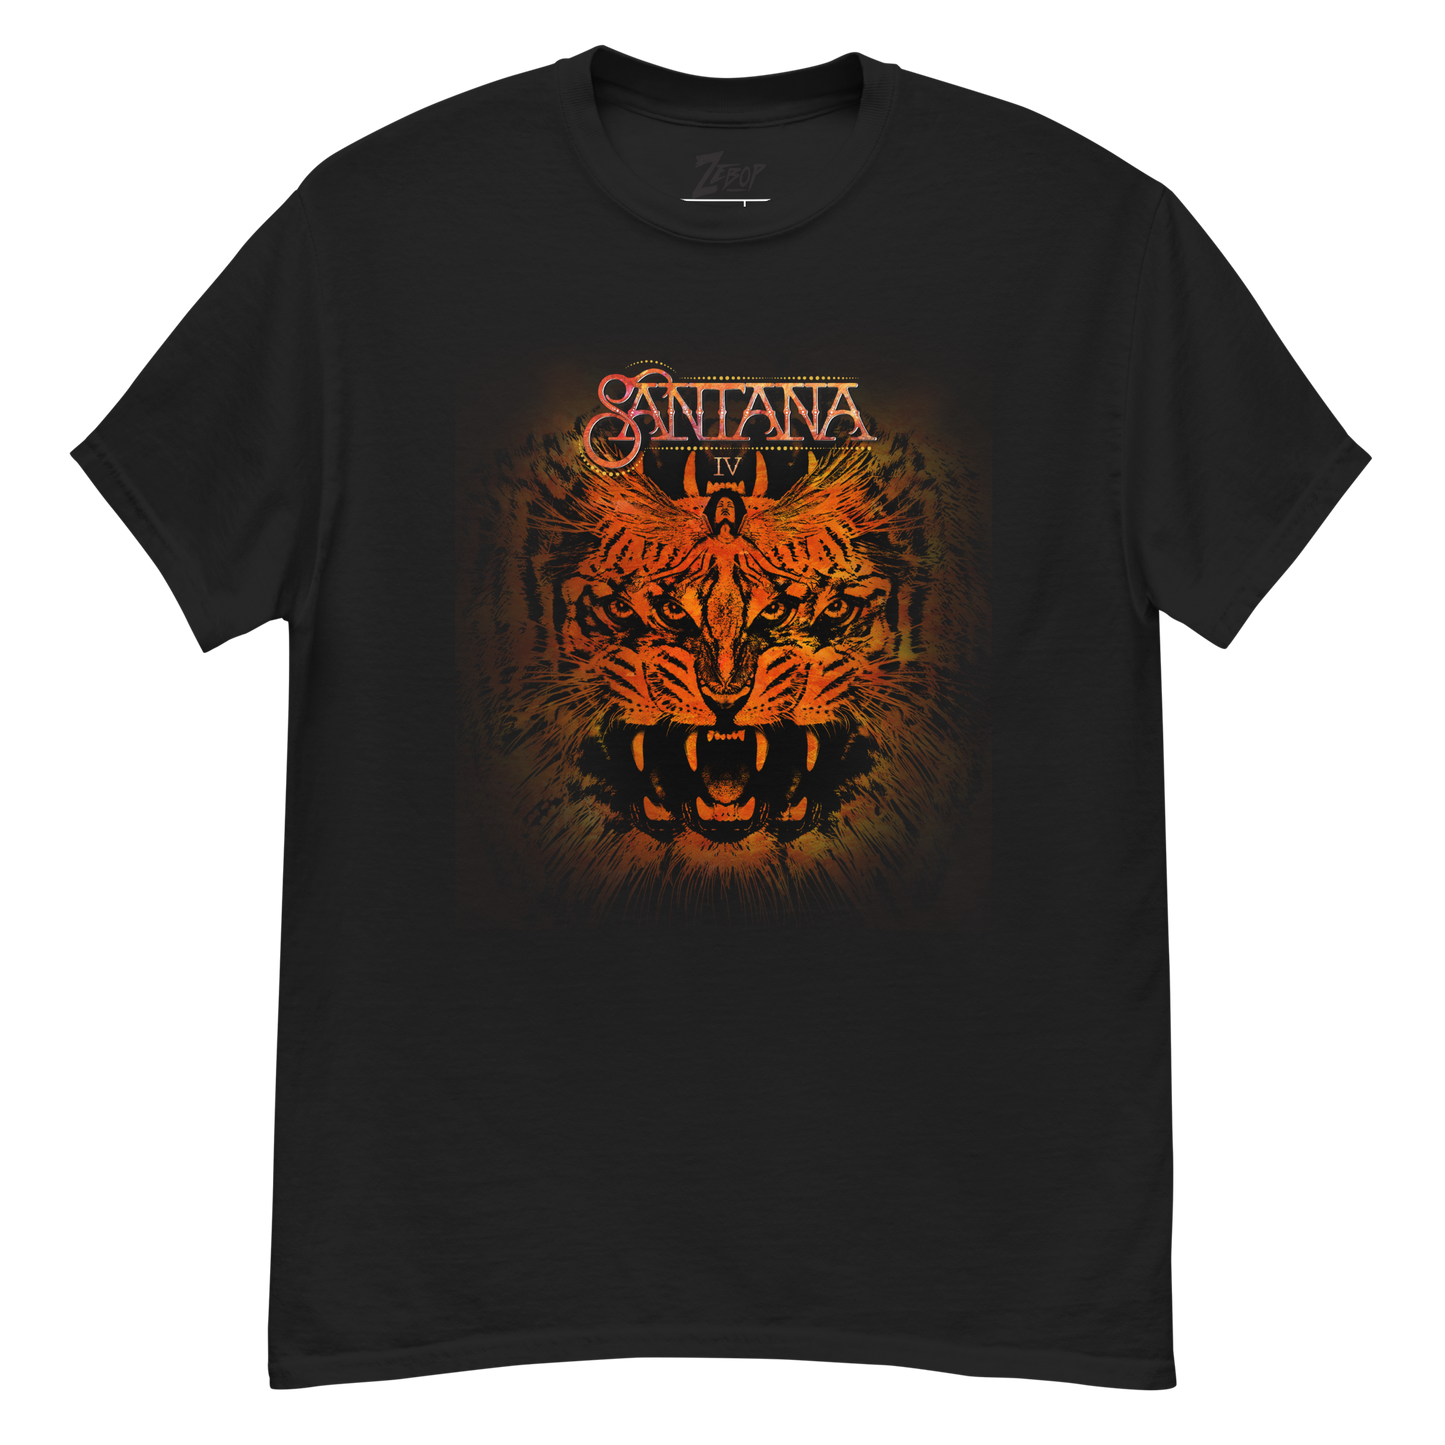 Santana - IV Live T-Shirt - Black